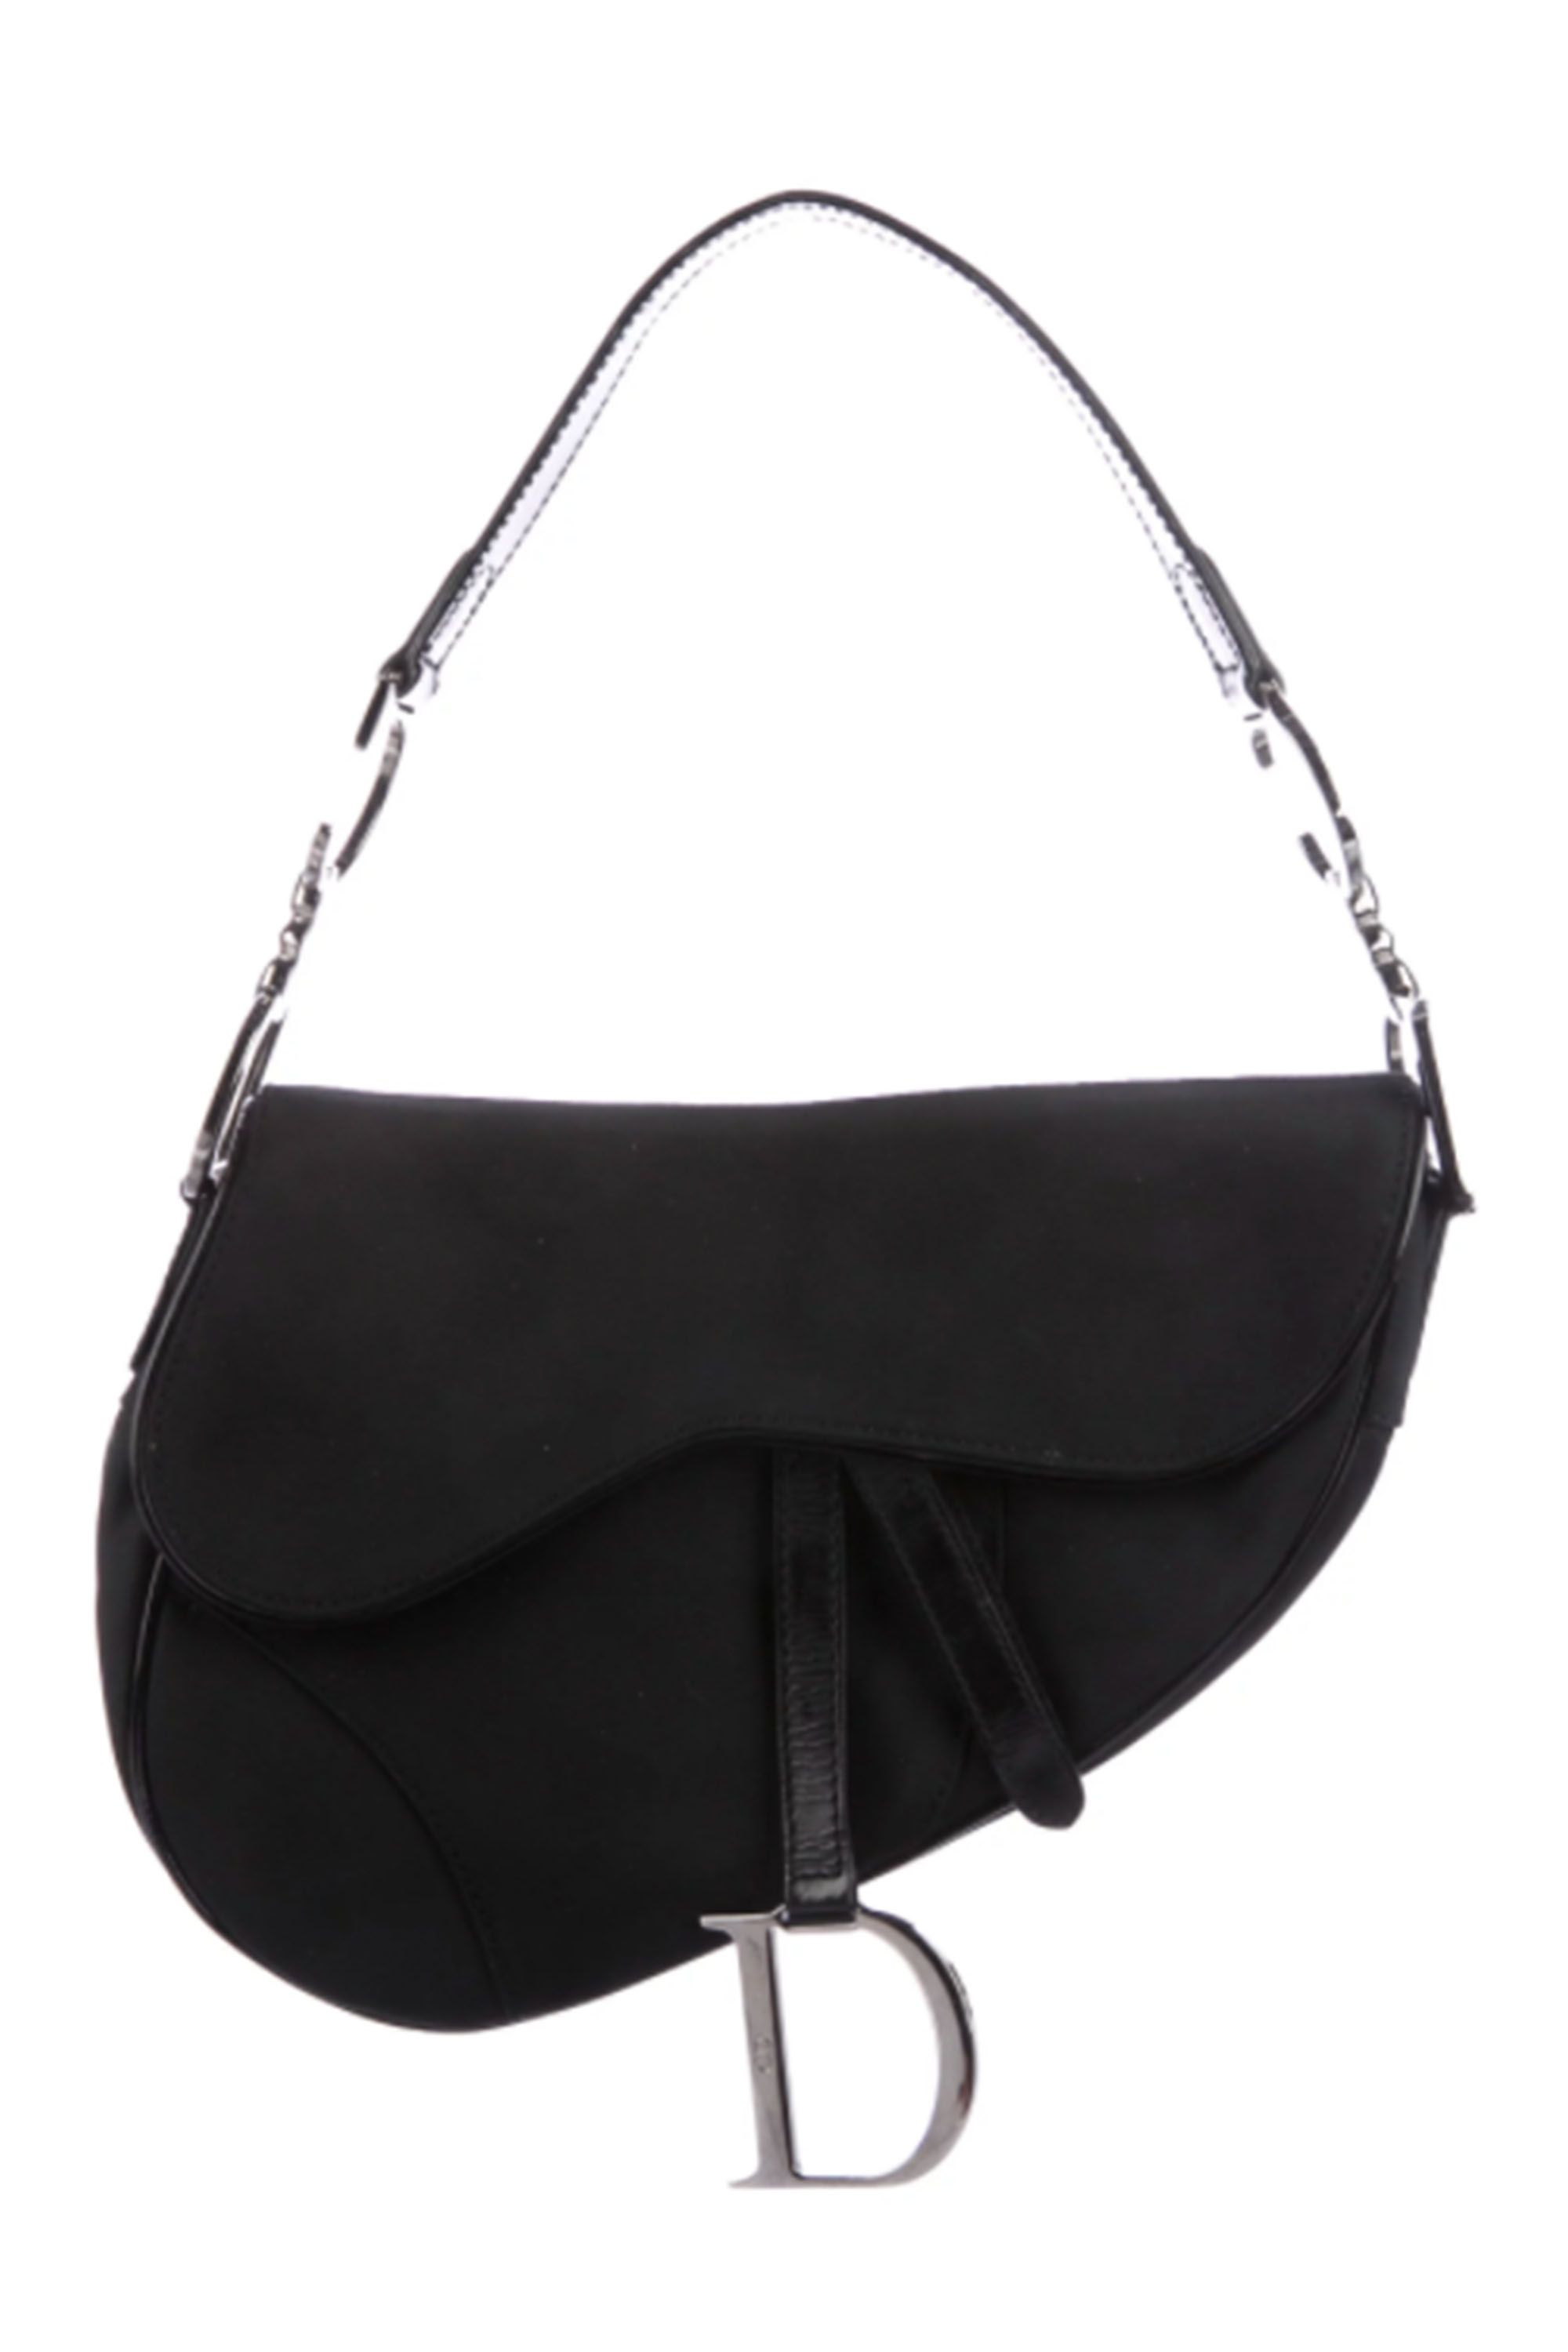 Dior Saddle Bag Black  Designer Bag Hire